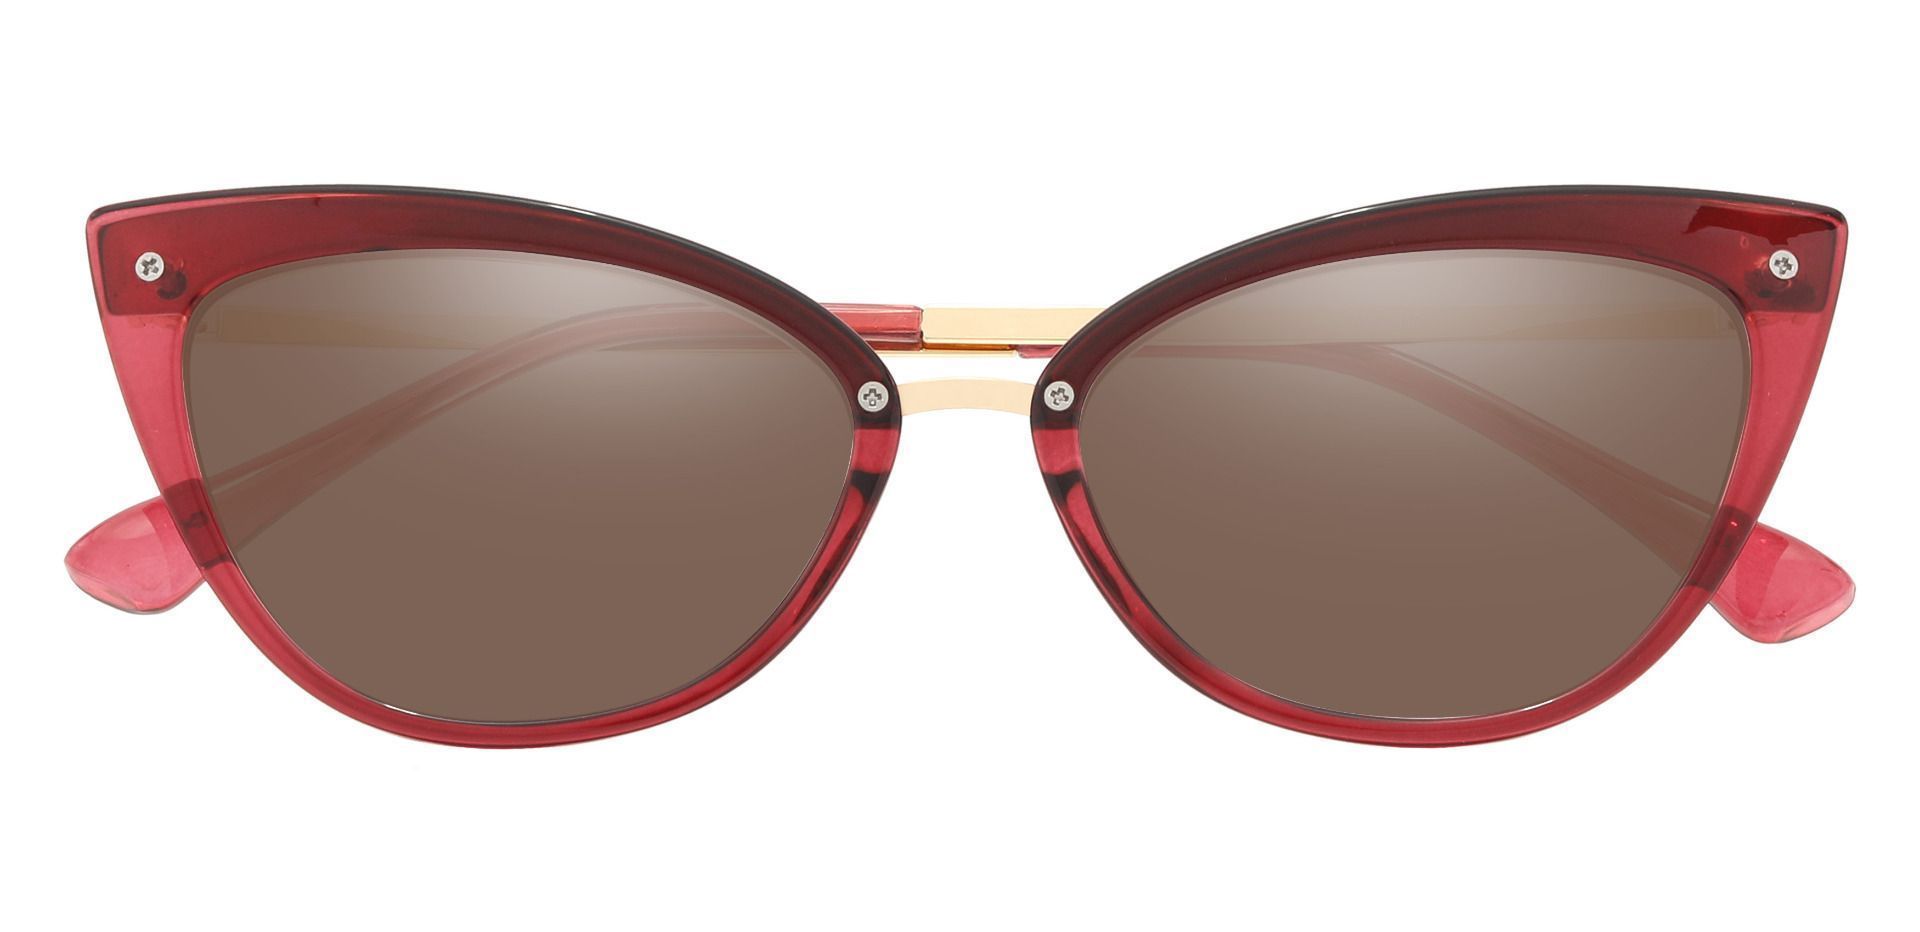 Glenda Cat Eye Prescription Sunglasses - Red Frame With Brown Lenses